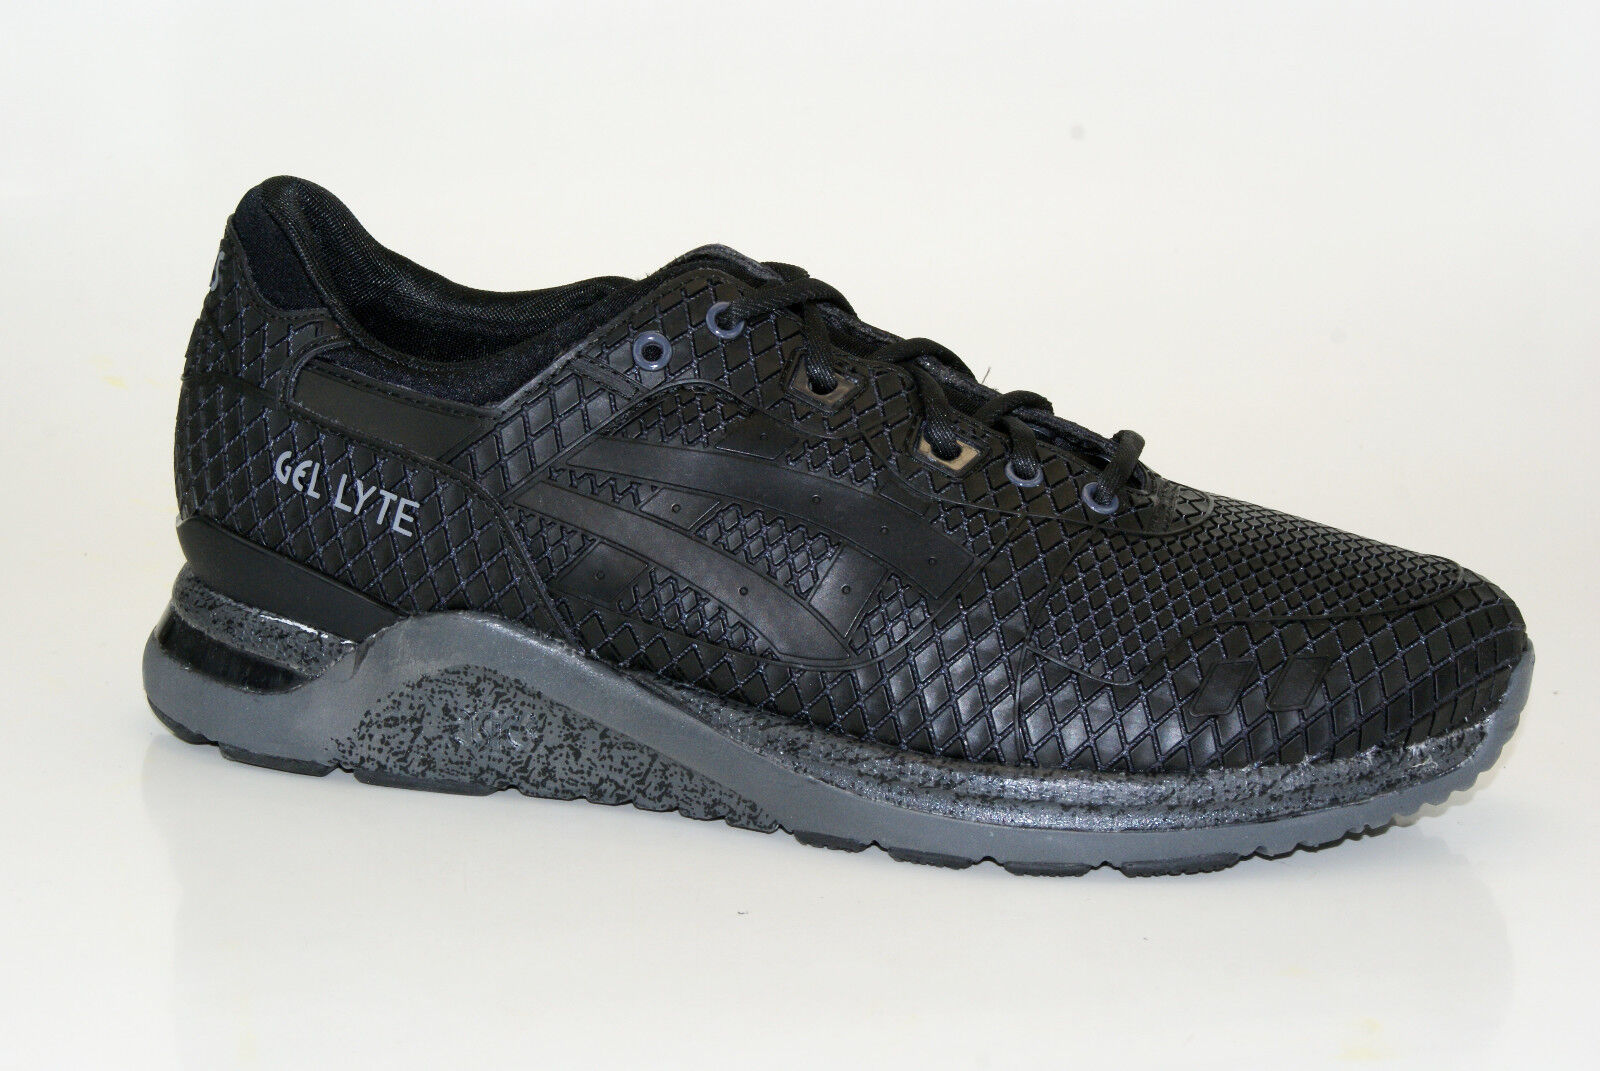 Asics Gel-Lyte Evo Samurai Pack Turnschuhe Sneaker Herren Schuhe HN543-9016